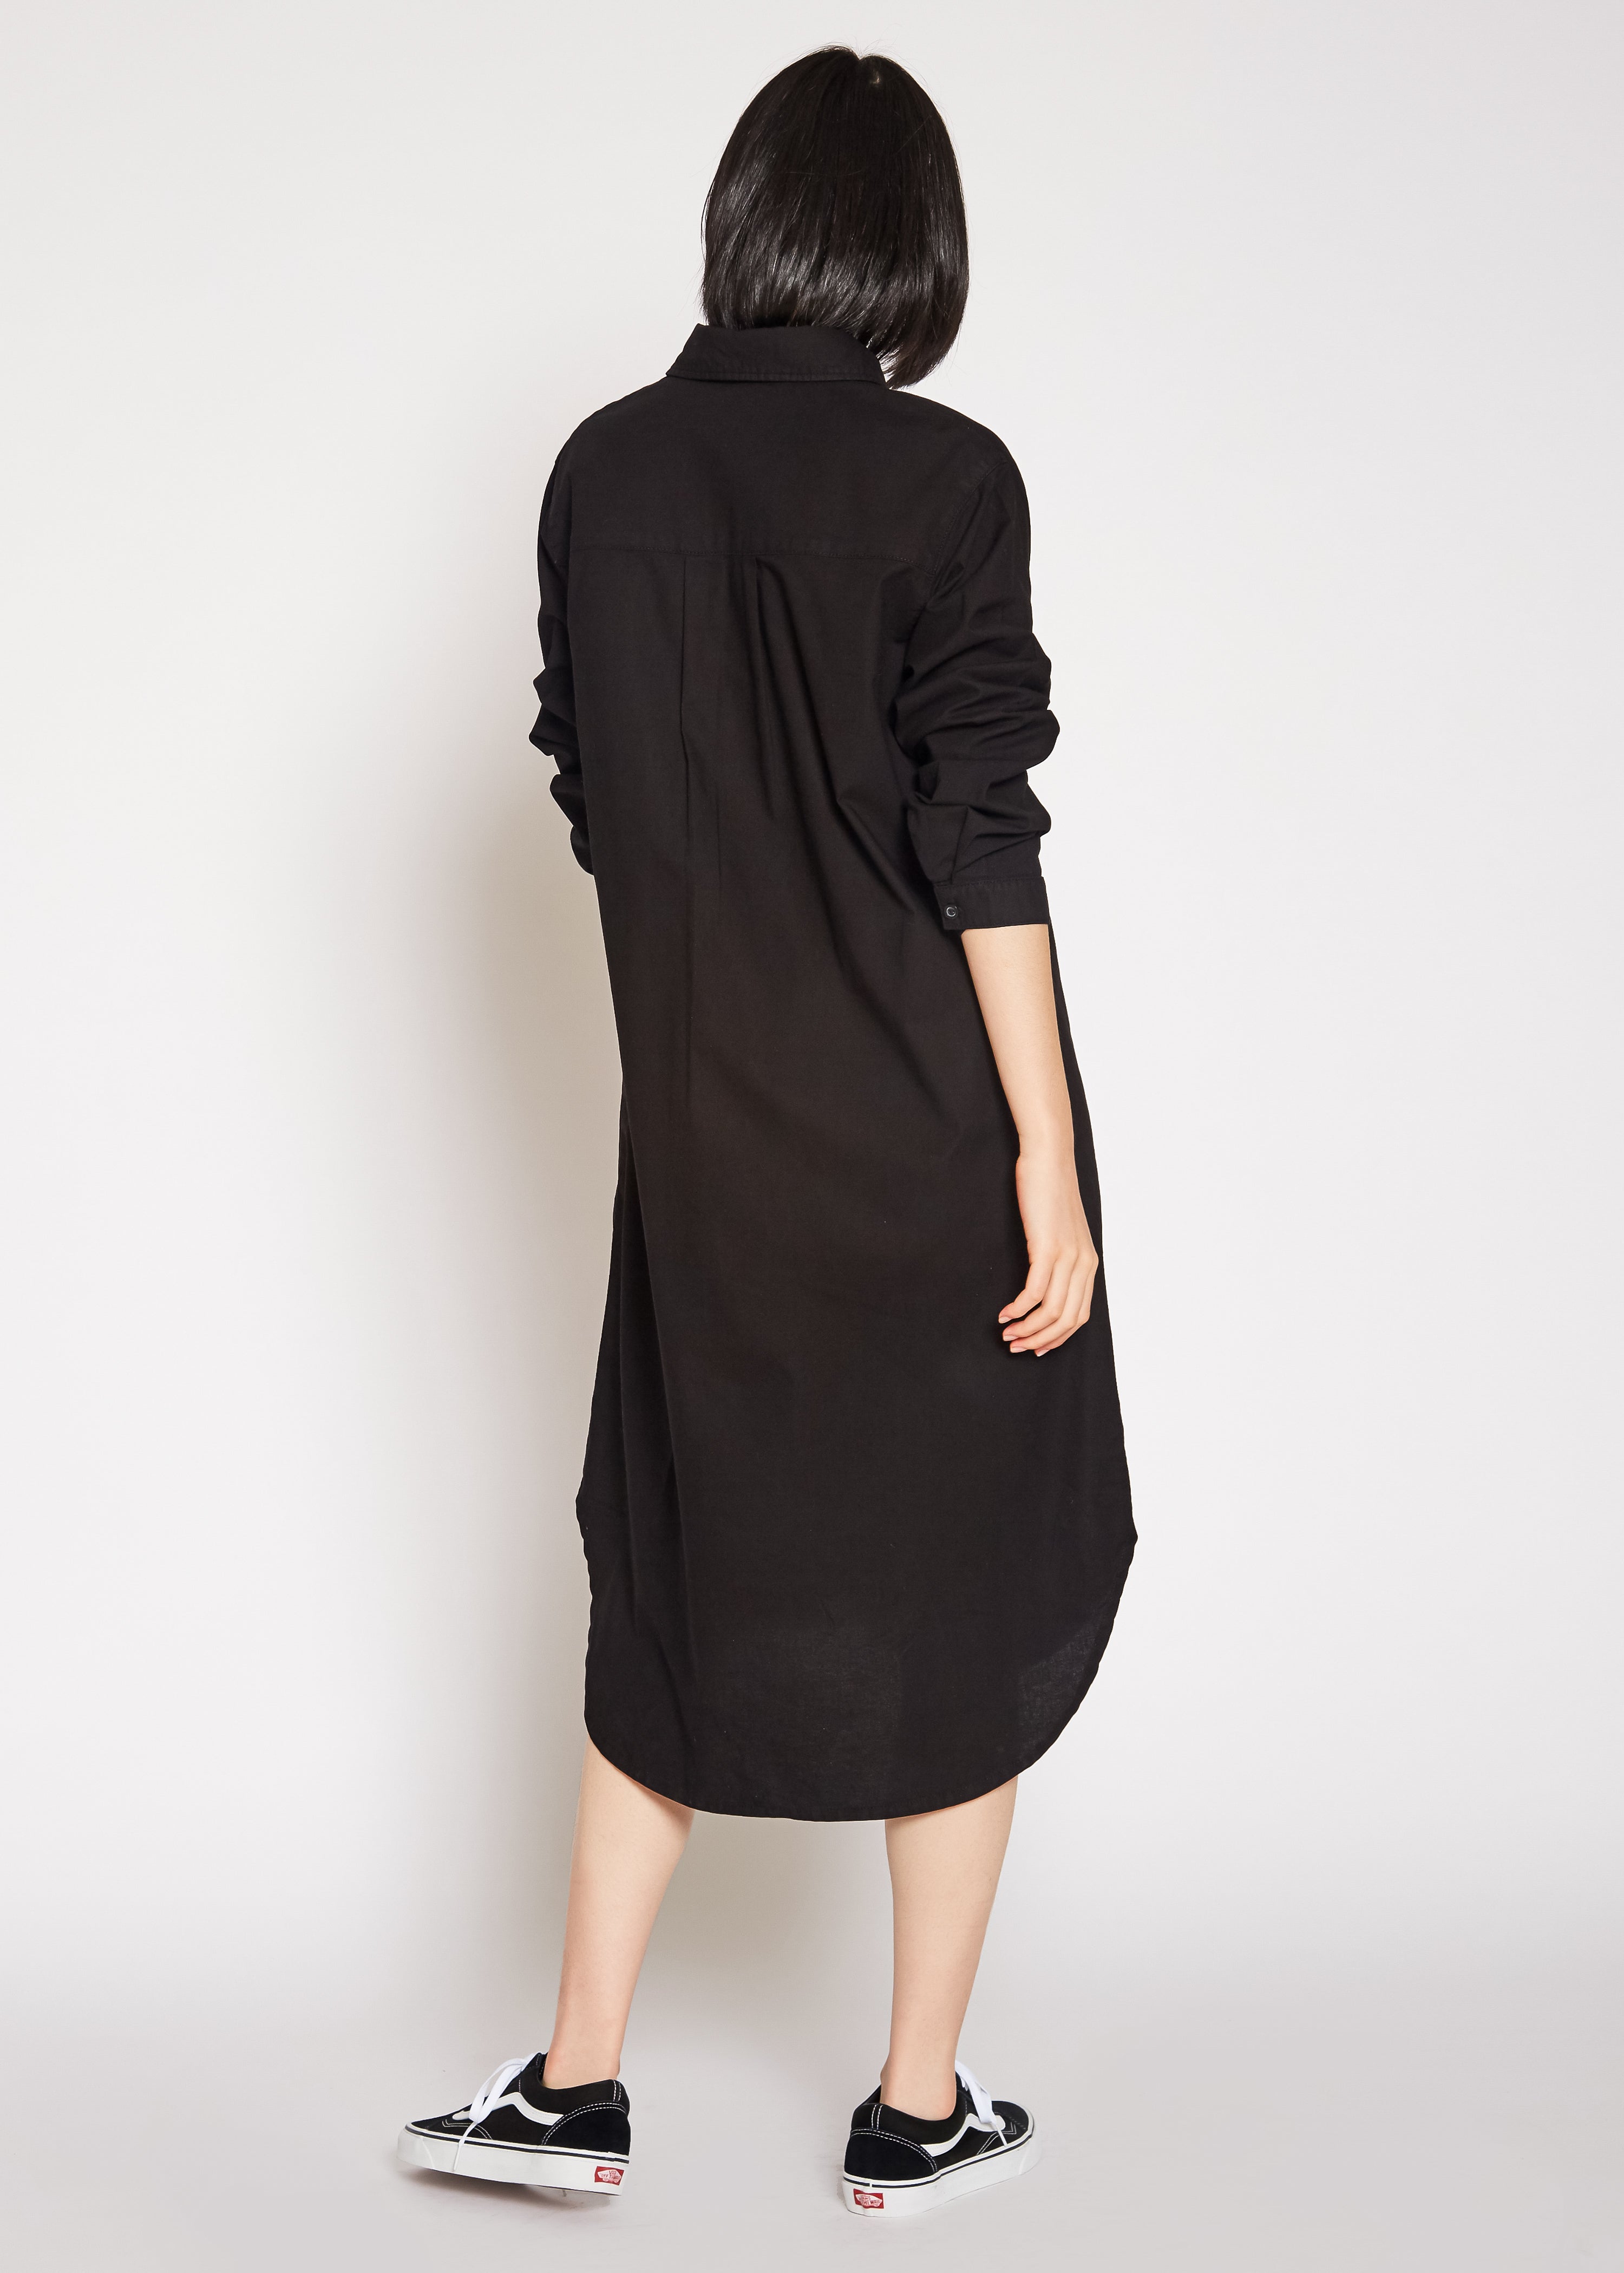 Makenzie Linen Shirt Dress In Black - Noend Denim